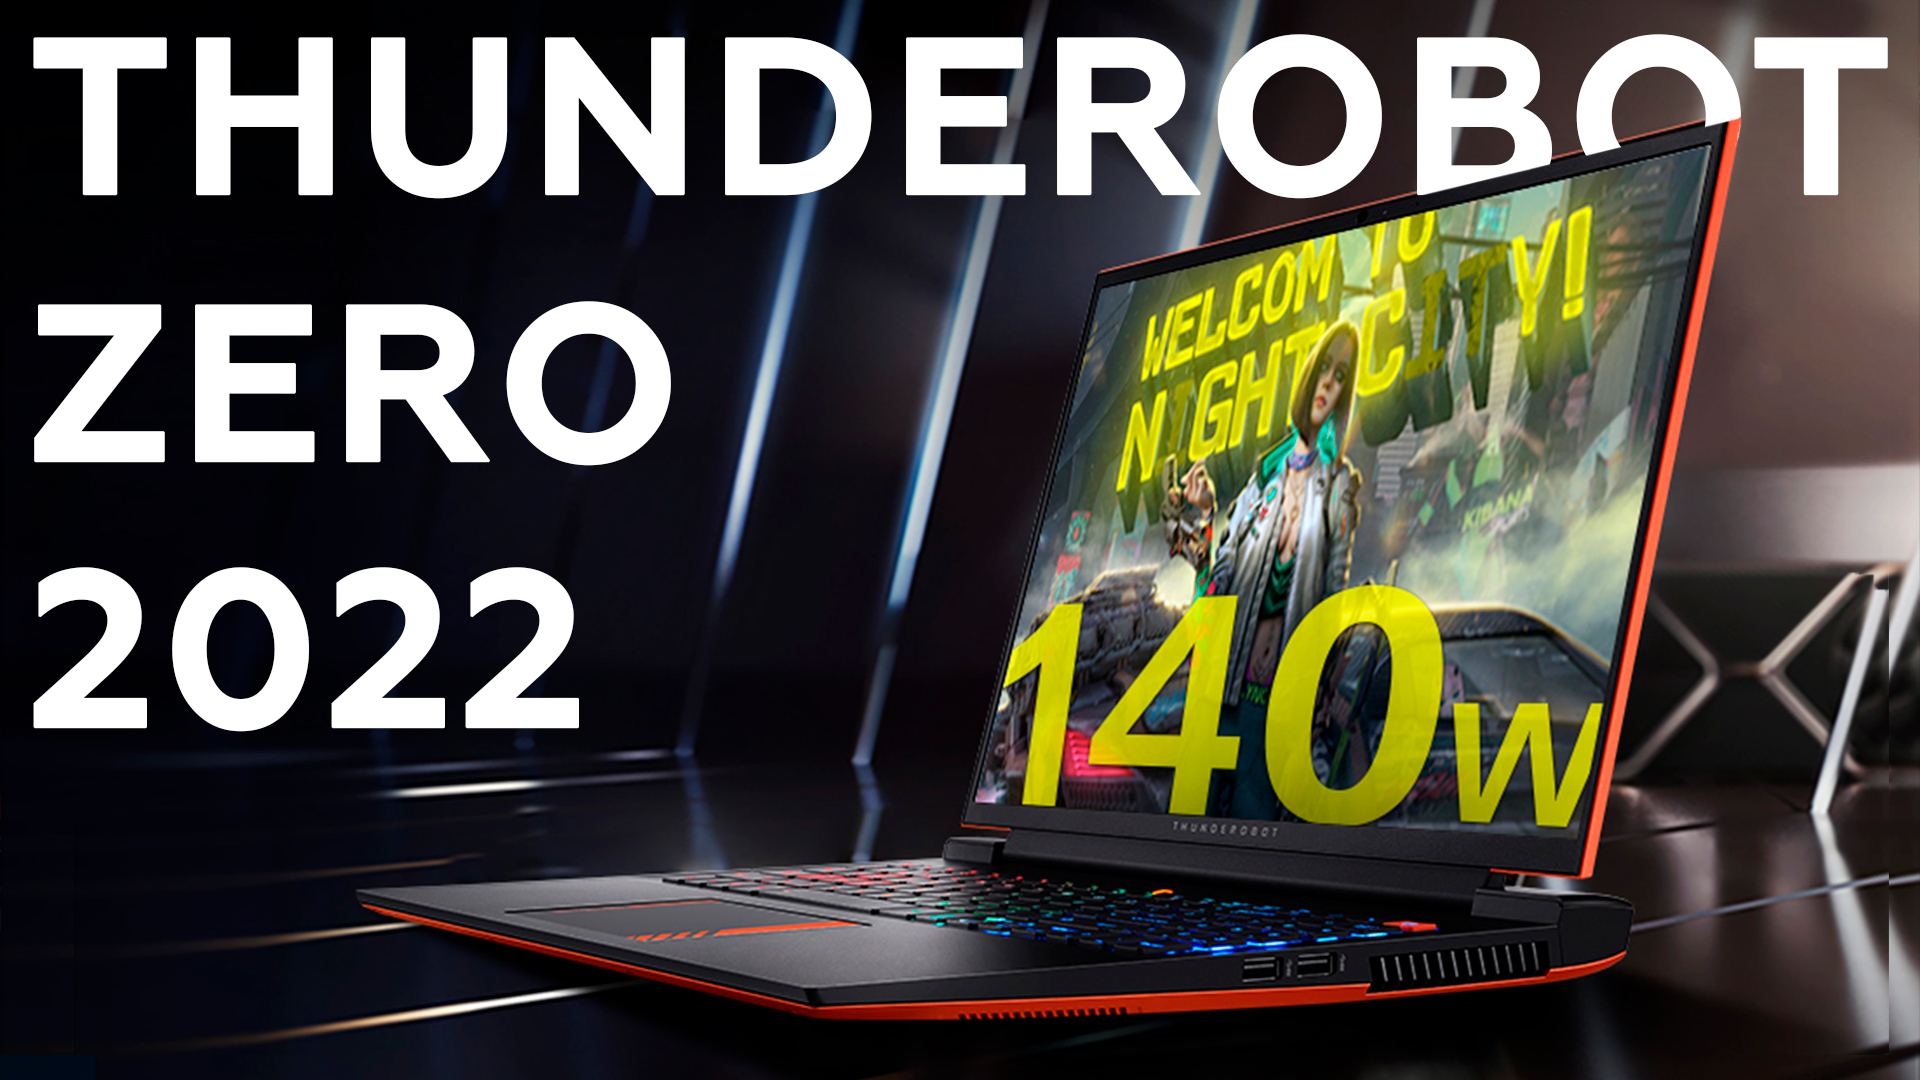 Обзор игрового ноутбука Thunderobot Zero 2022